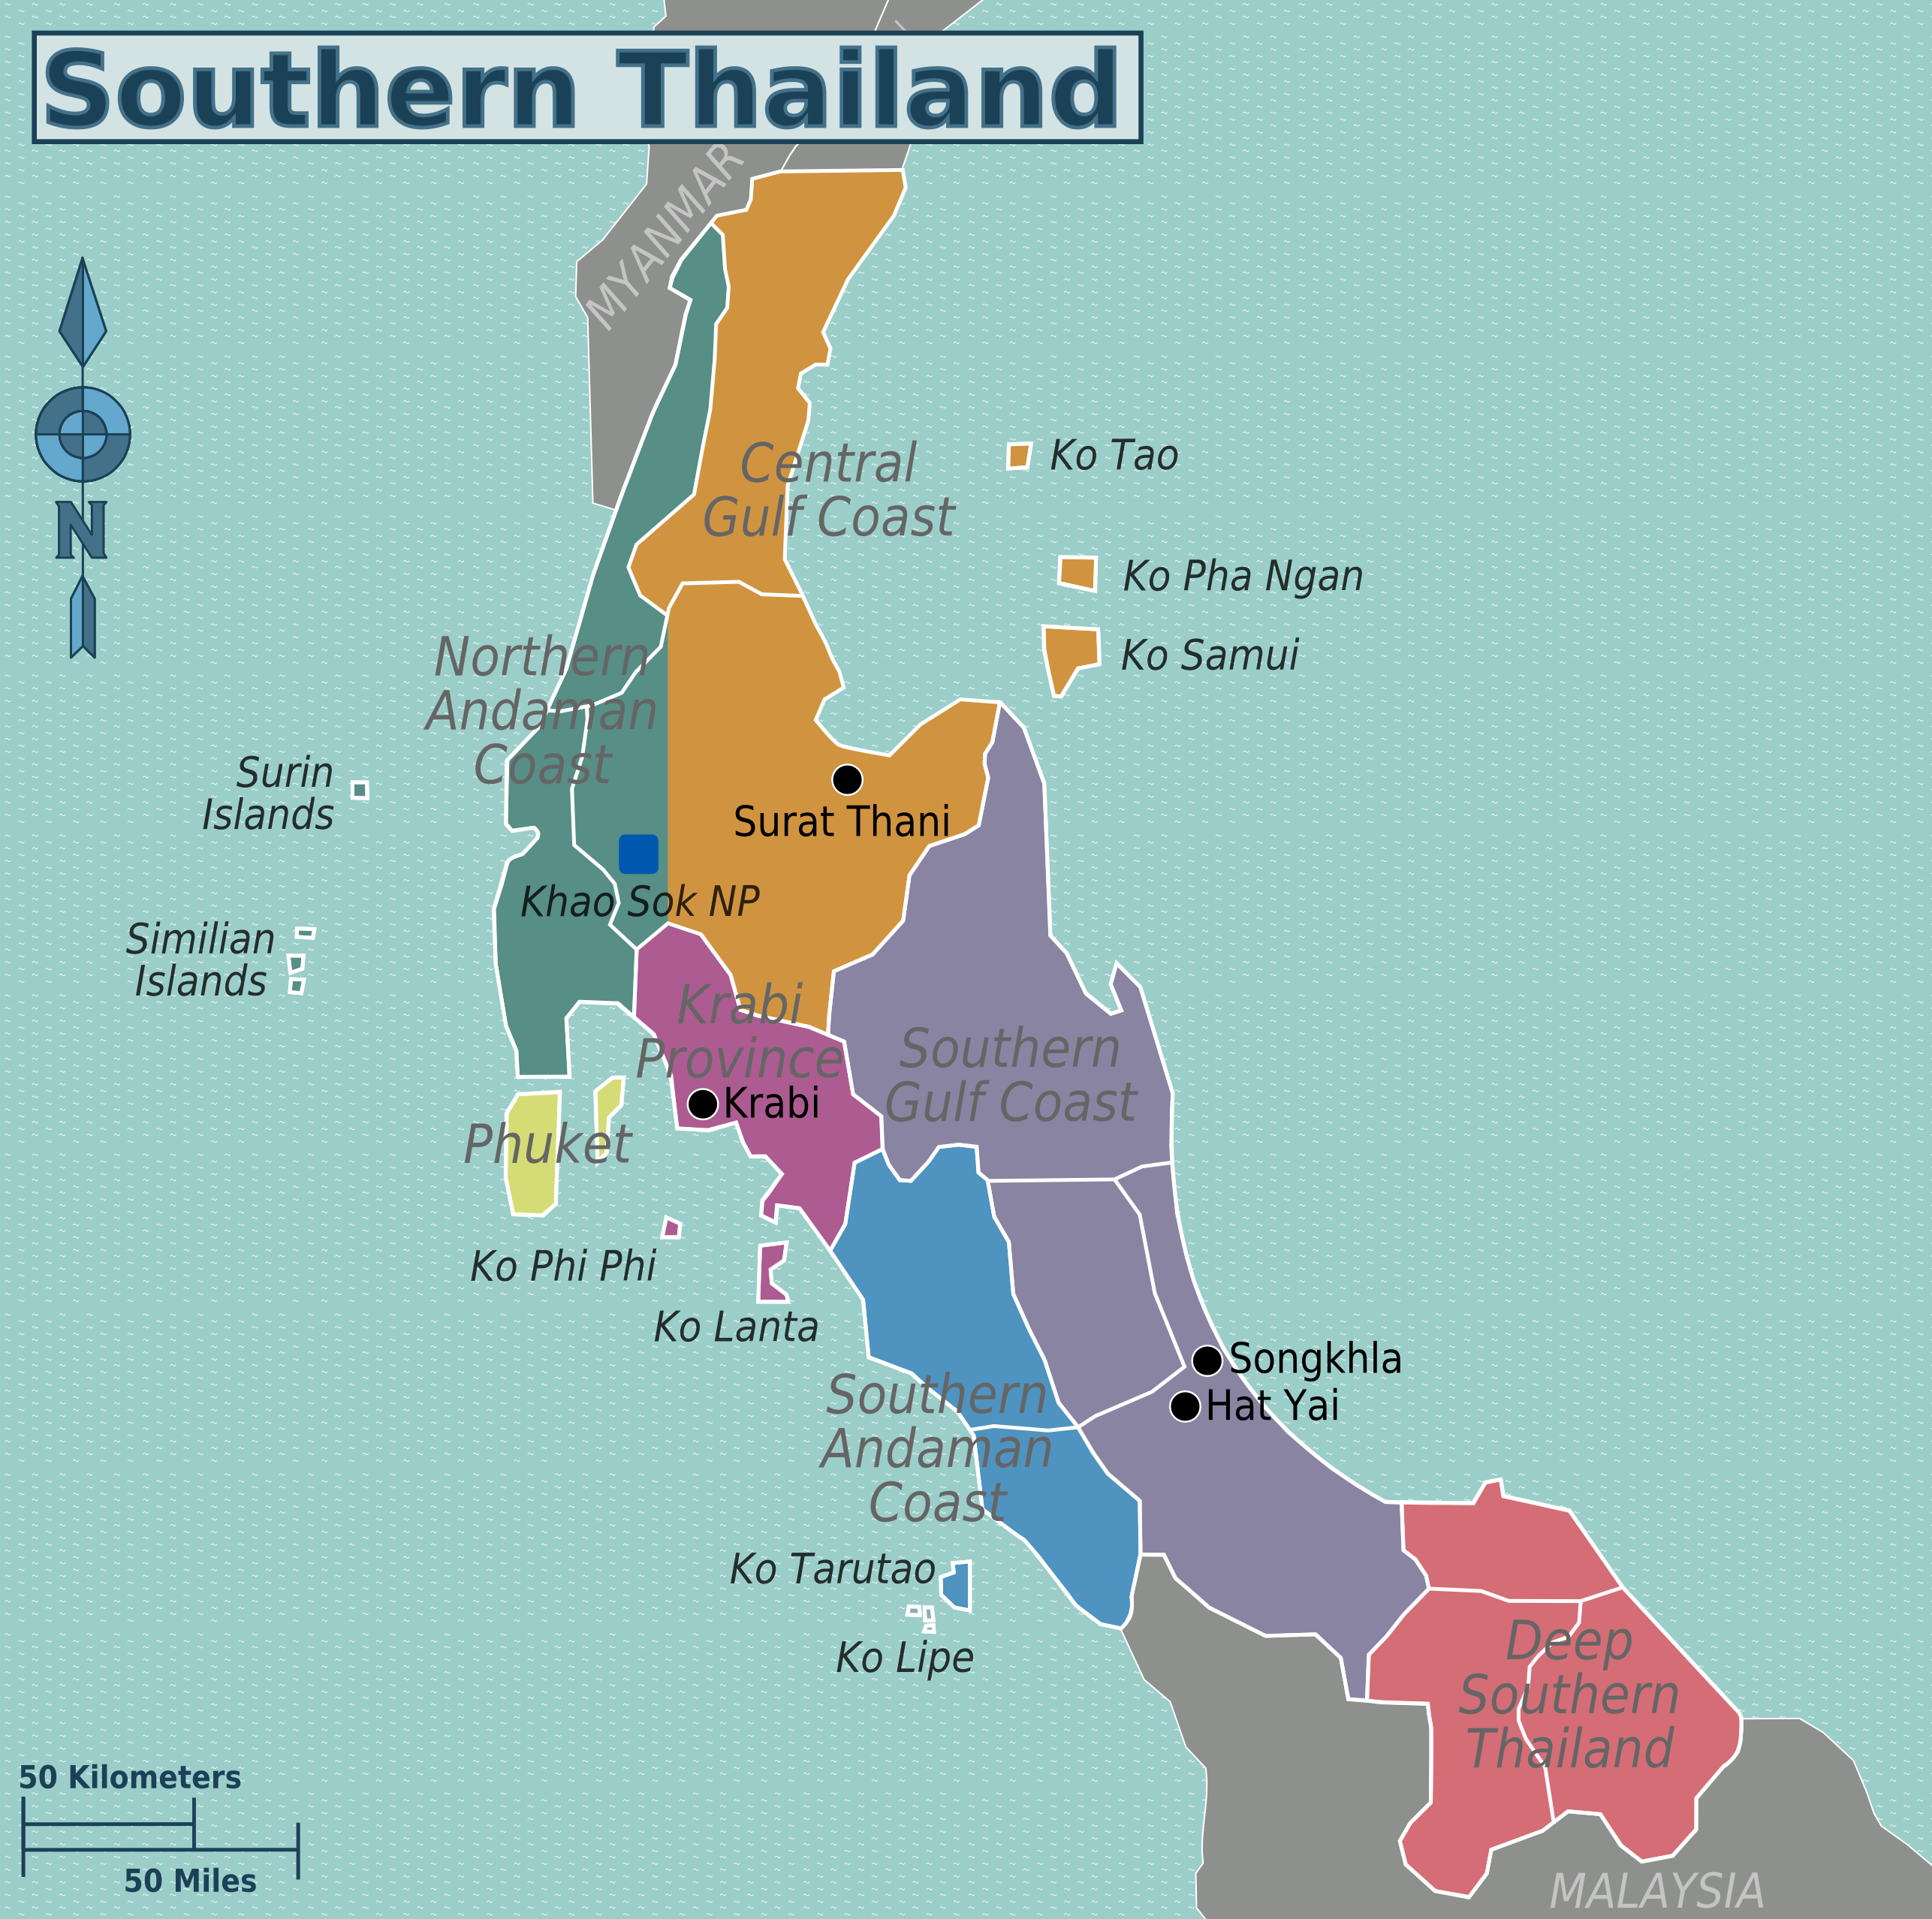 בין החופים הלבנים לאיים המהפנטים - התחברו לקסם של דרום תאילנד | southern thailand regions map